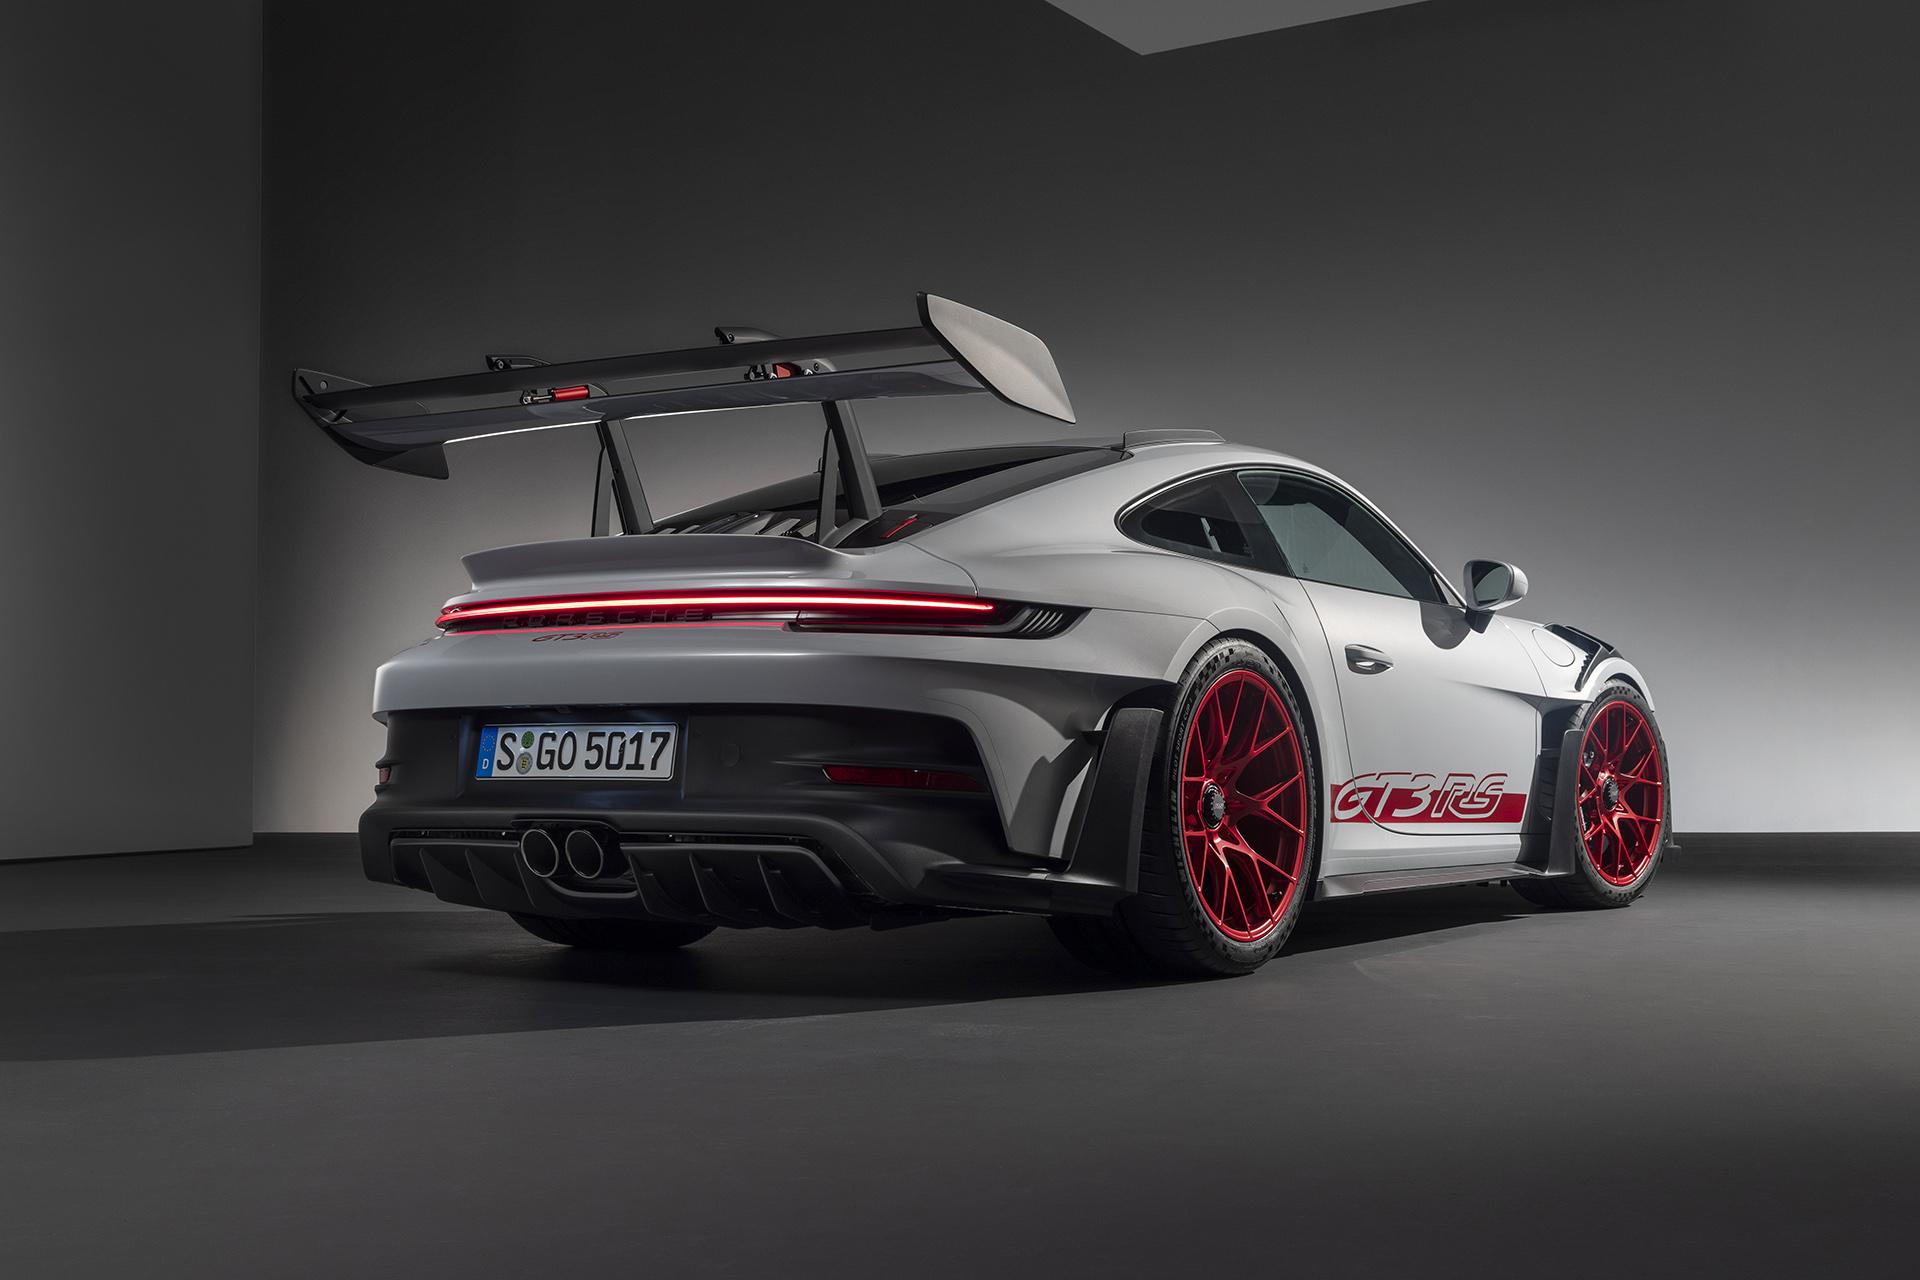 Porsche 911 GT3 RS schuin achter